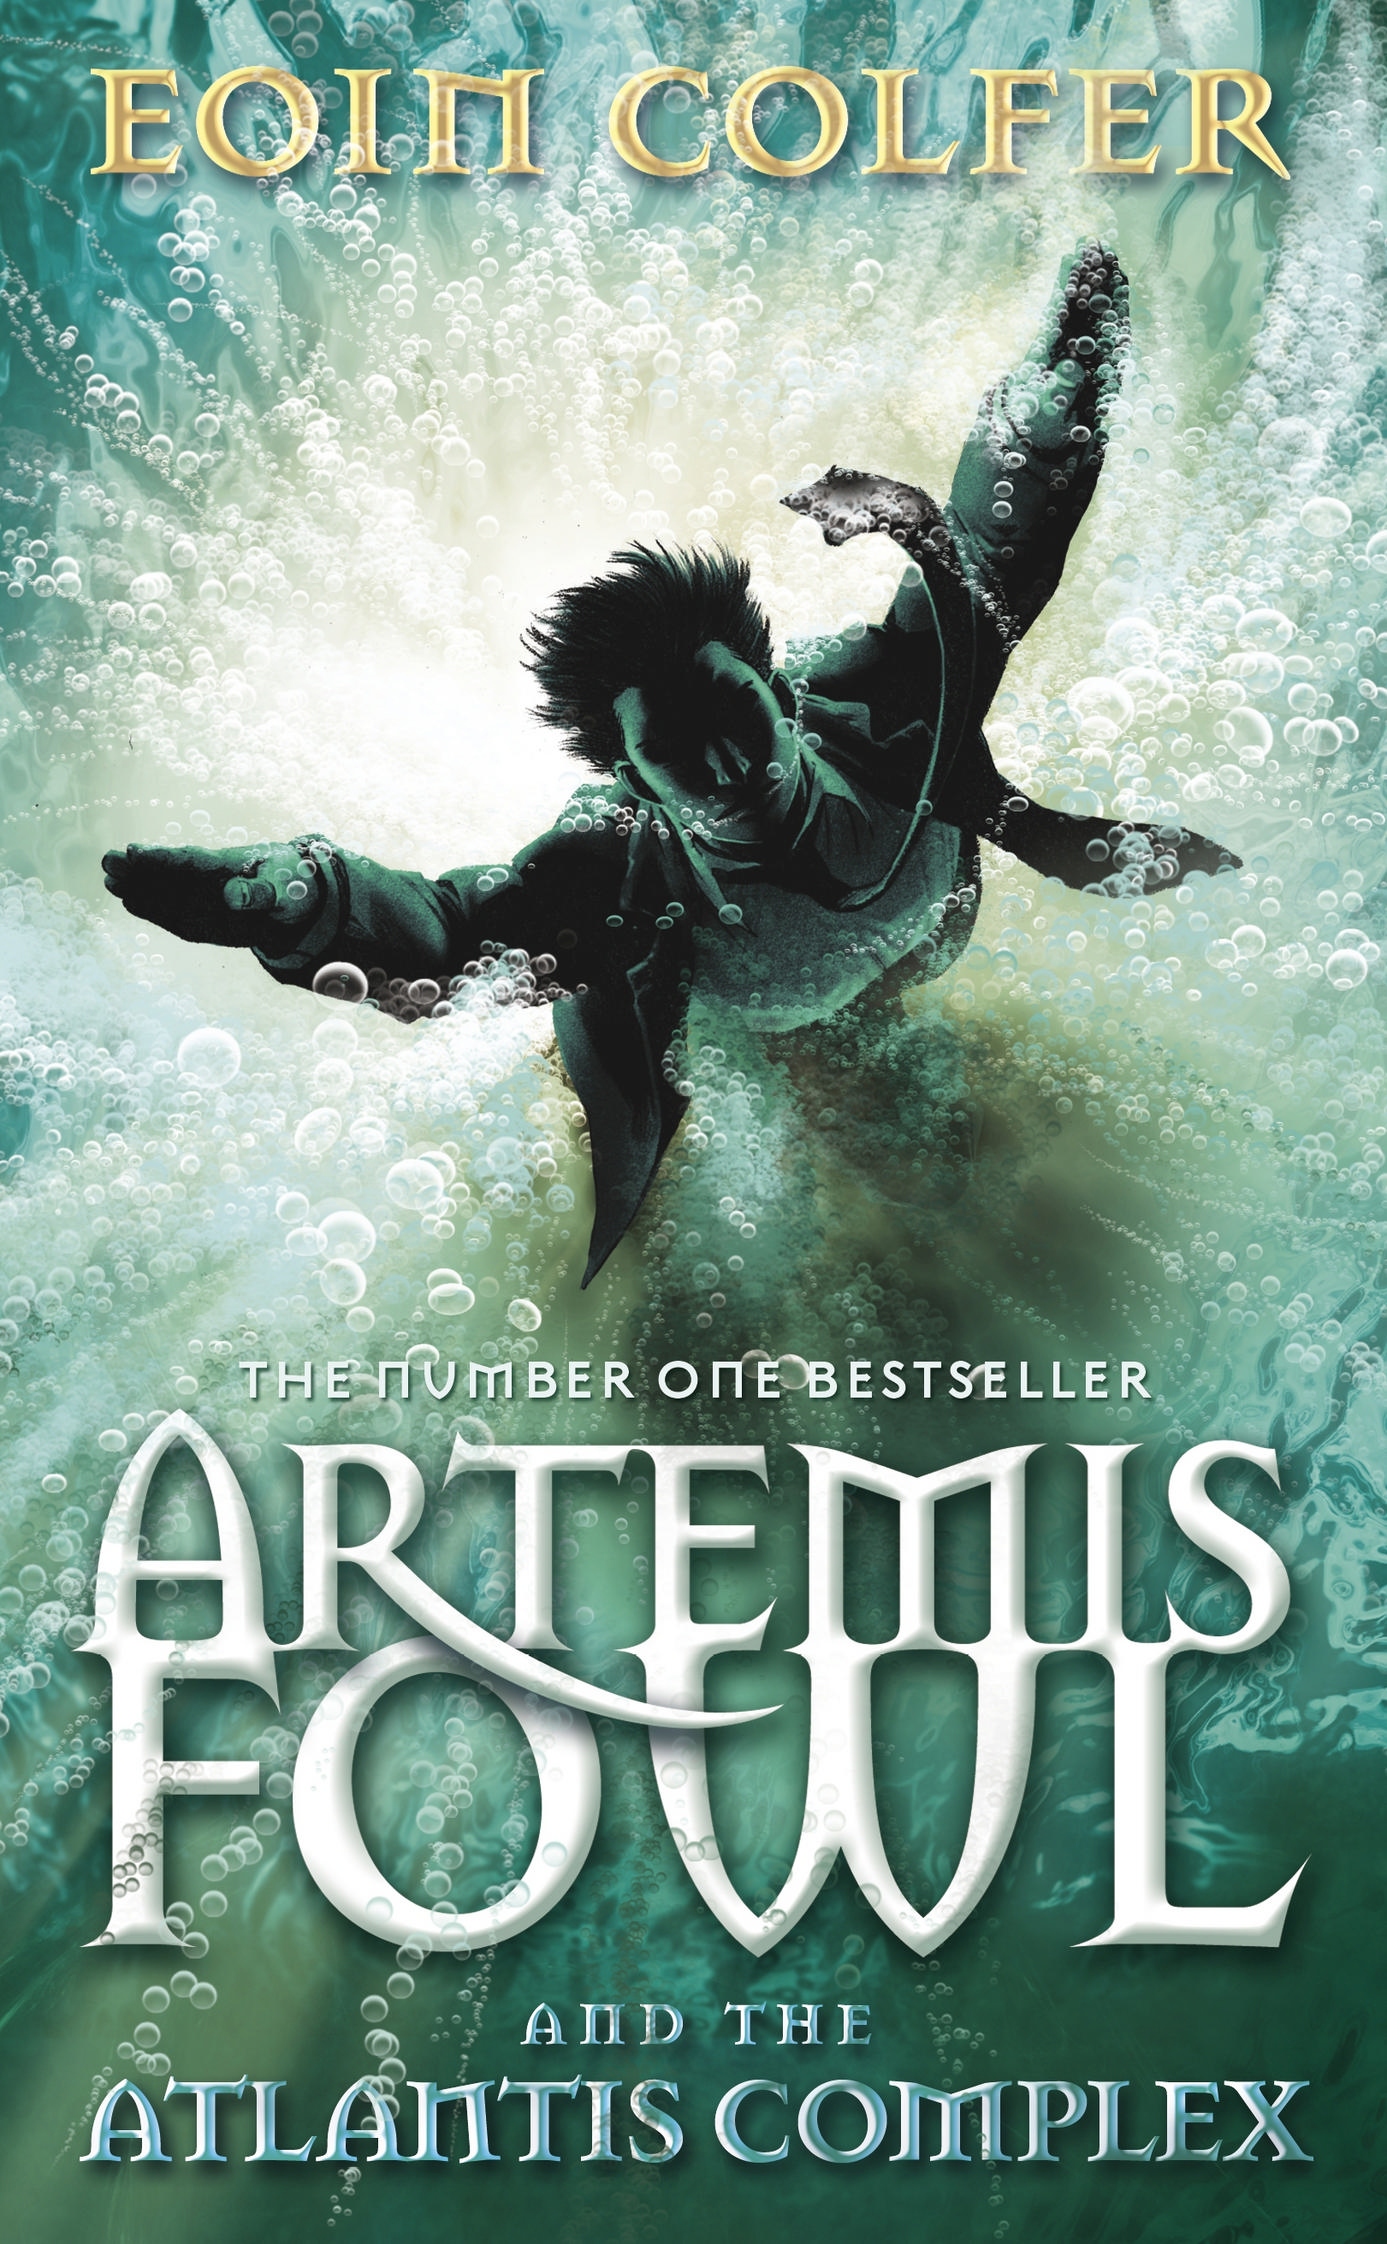 New Artemis Fowl UK Covers!